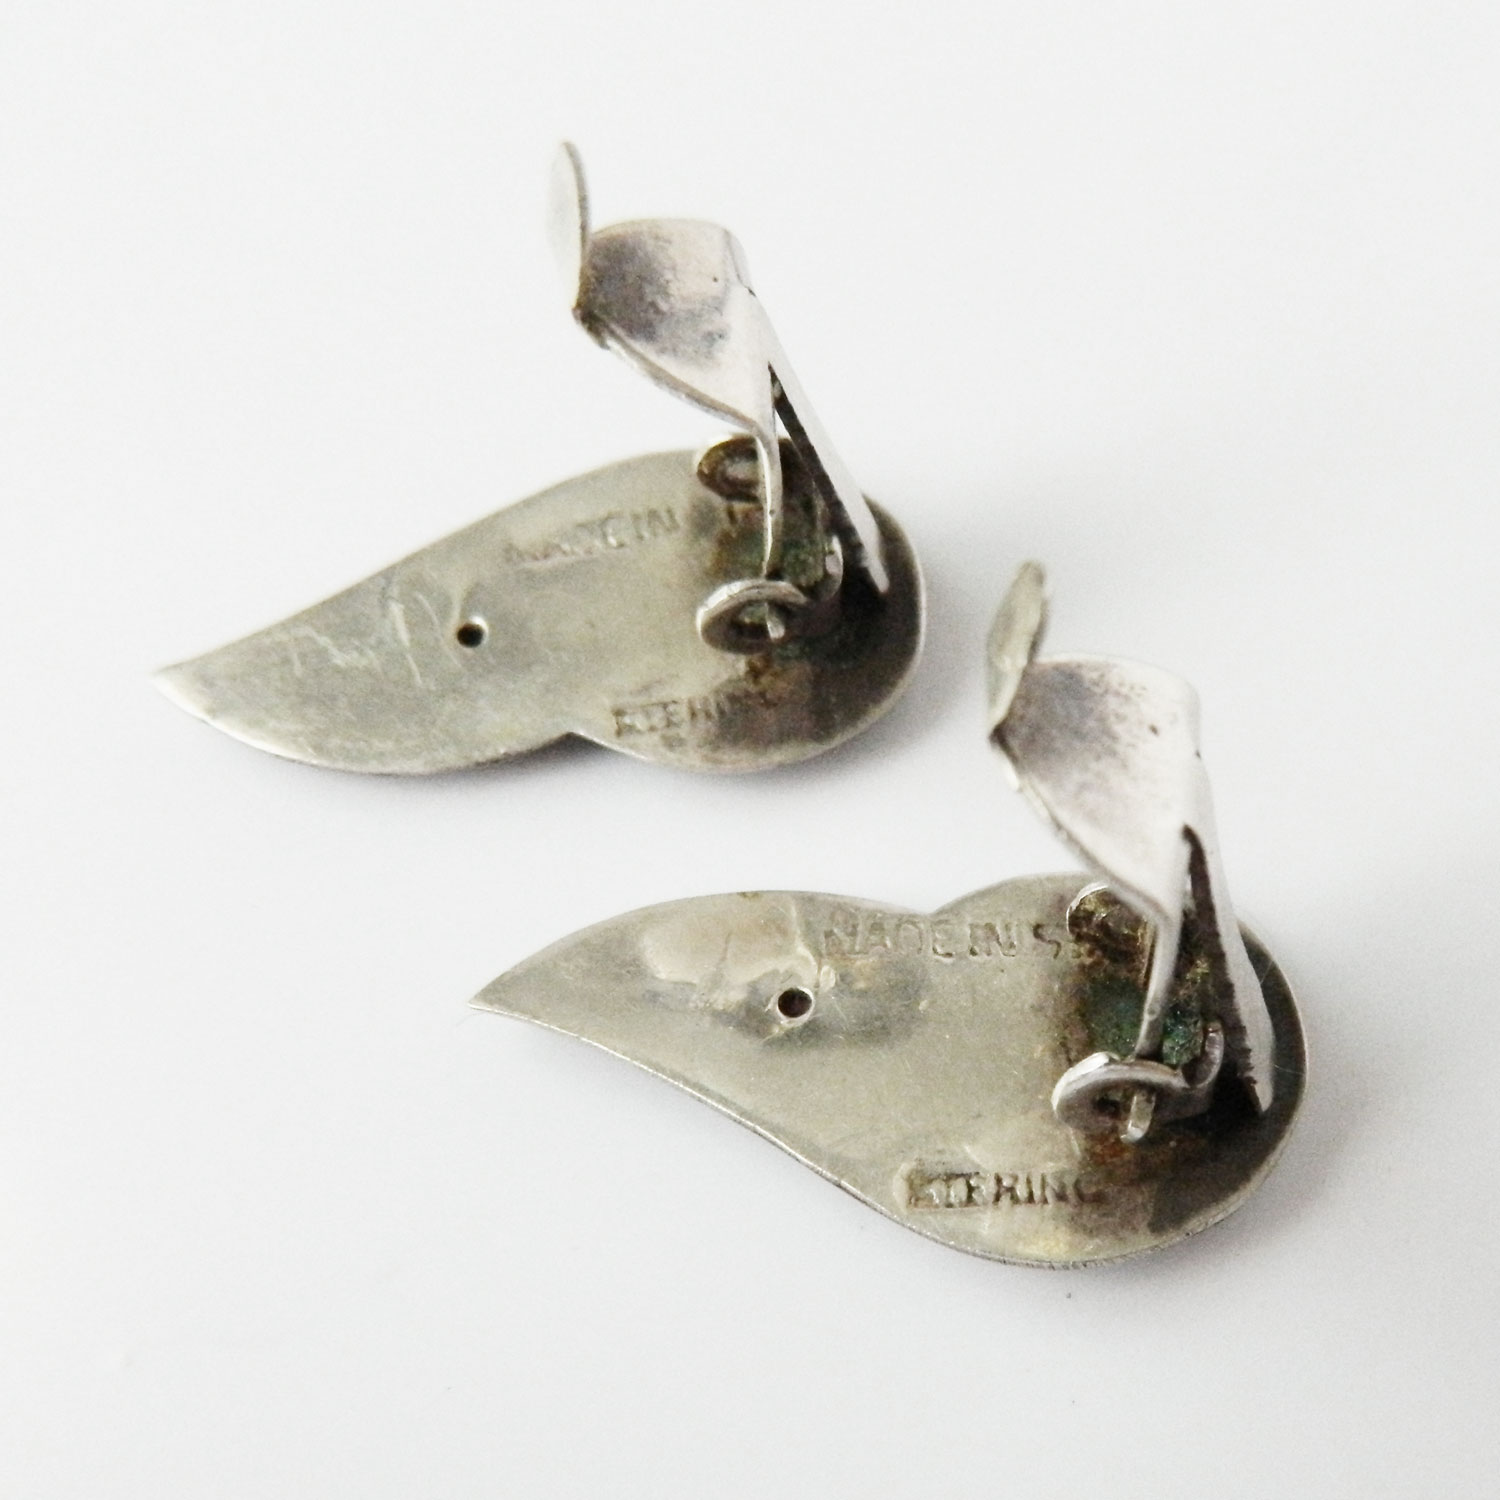 1950s Siam silver earrings